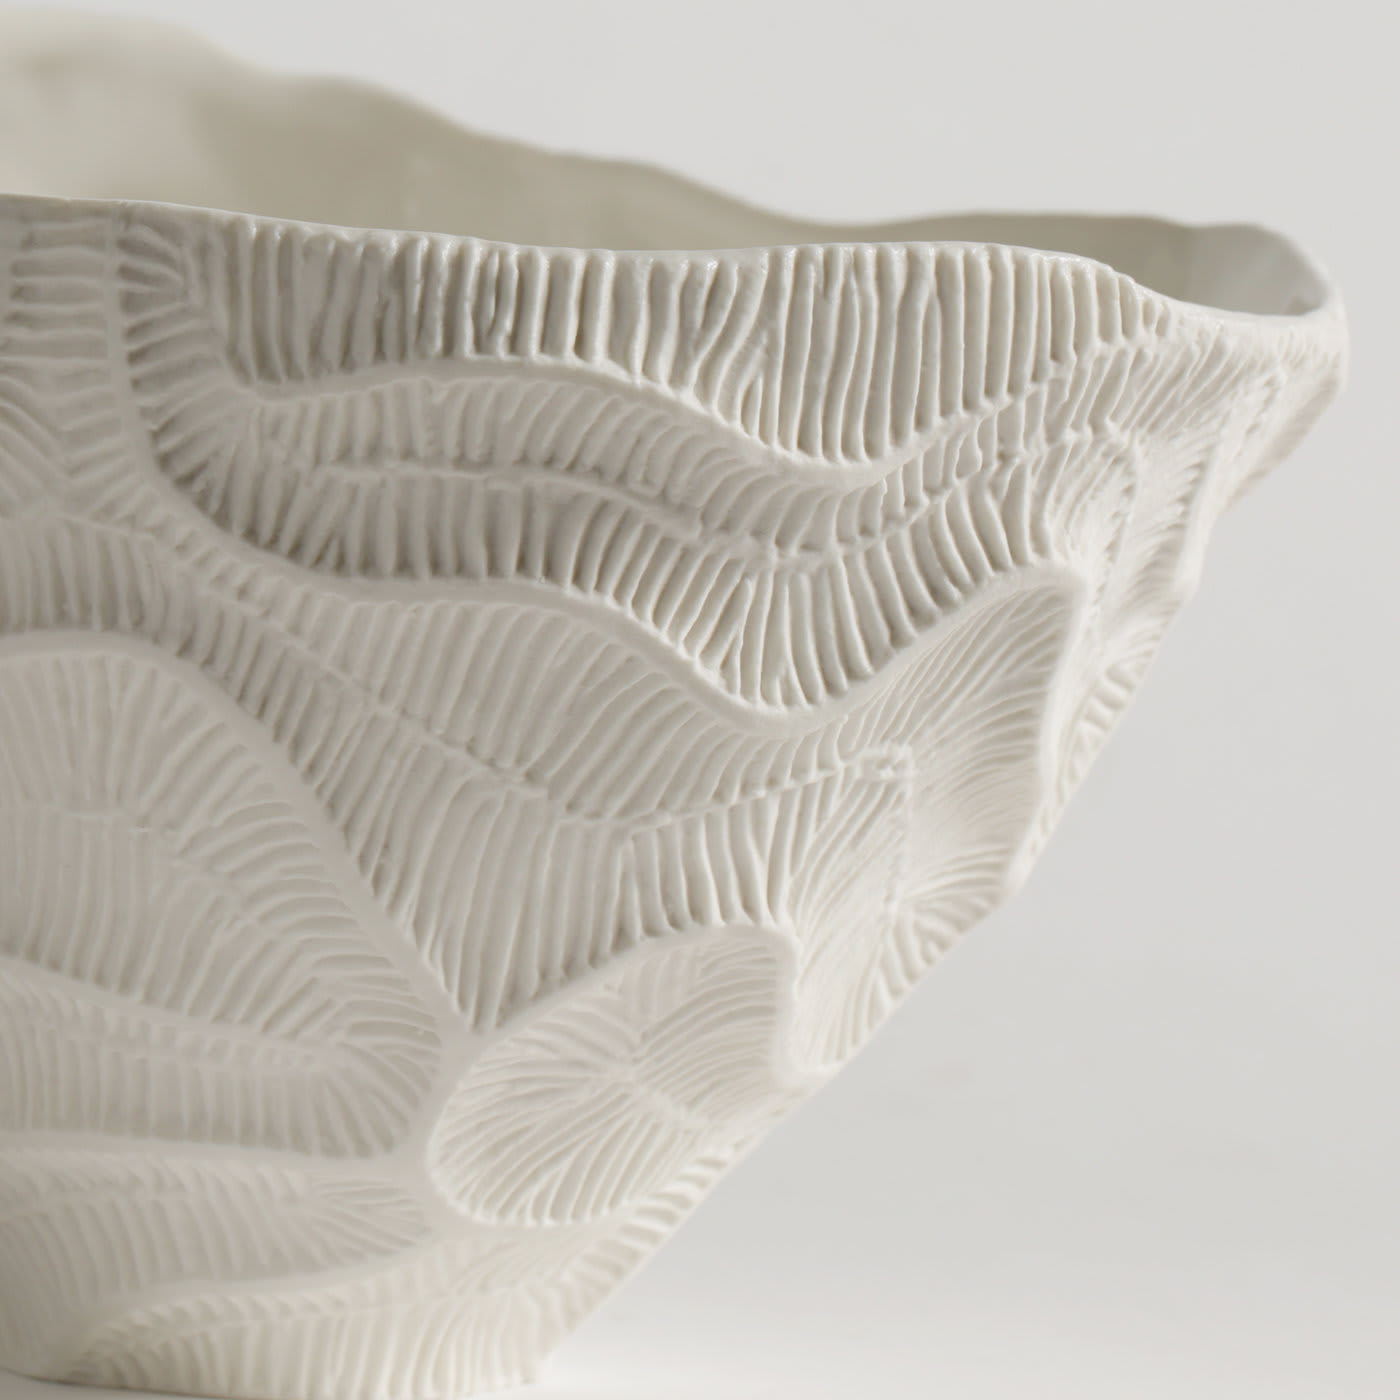 Fossilia White Bowl - Fos Ceramiche